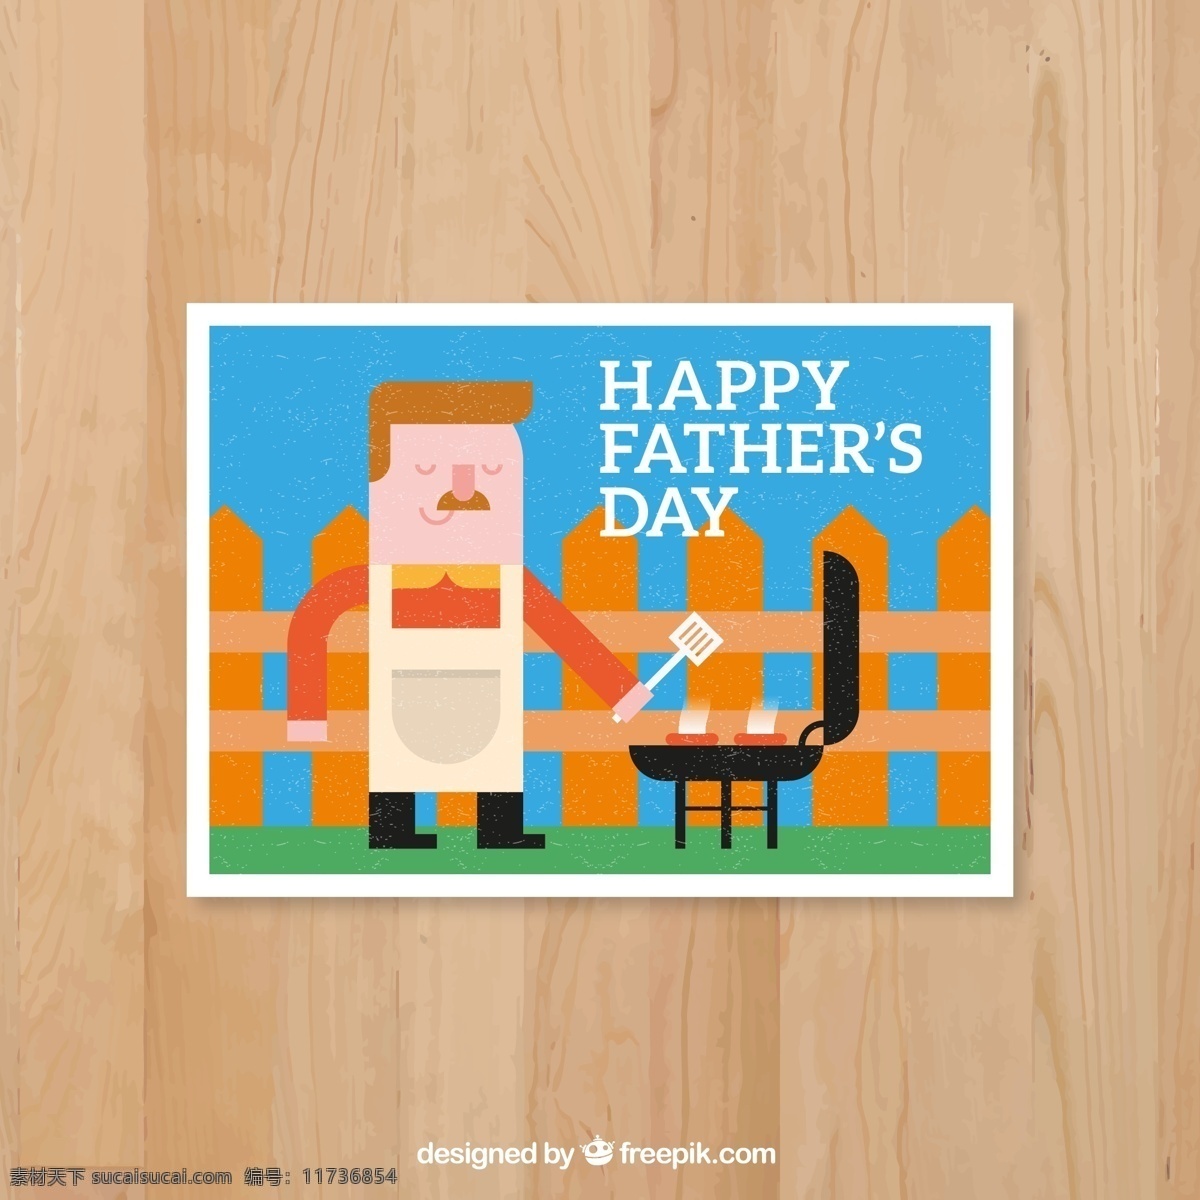 卡通 烹饪 男子 父亲节 贺卡 矢量图 香肠 栅栏 happy fathers day 烧烤 木纹